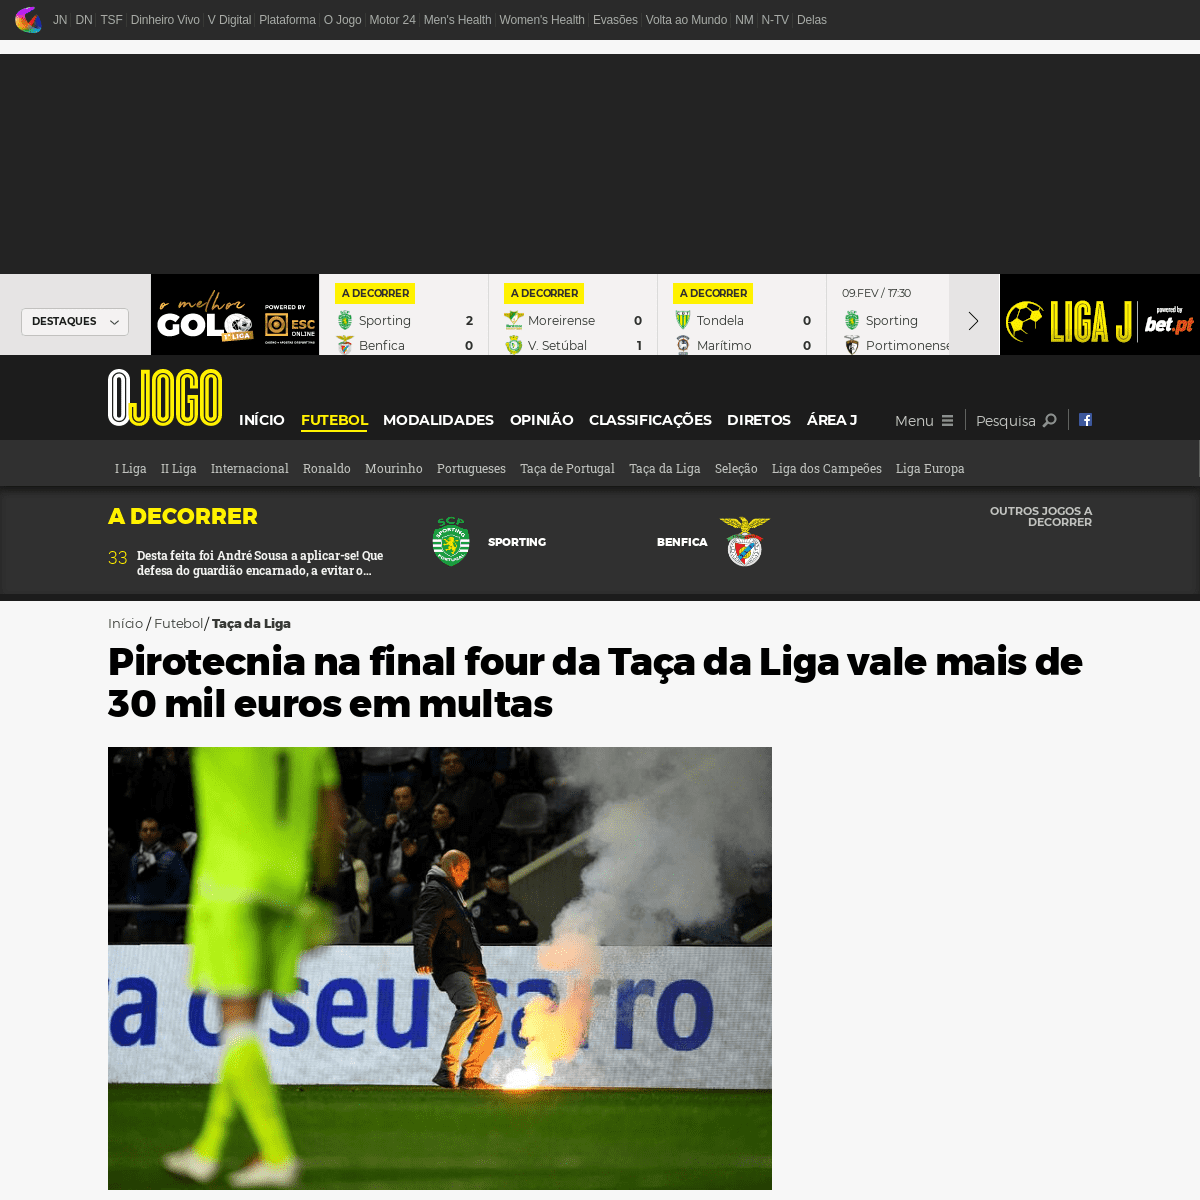 A complete backup of www.ojogo.pt/futebol/taca-liga/noticias/pirotecnia-na-final-four-da-taca-da-liga-vale-mais-de-30-mil-euros-